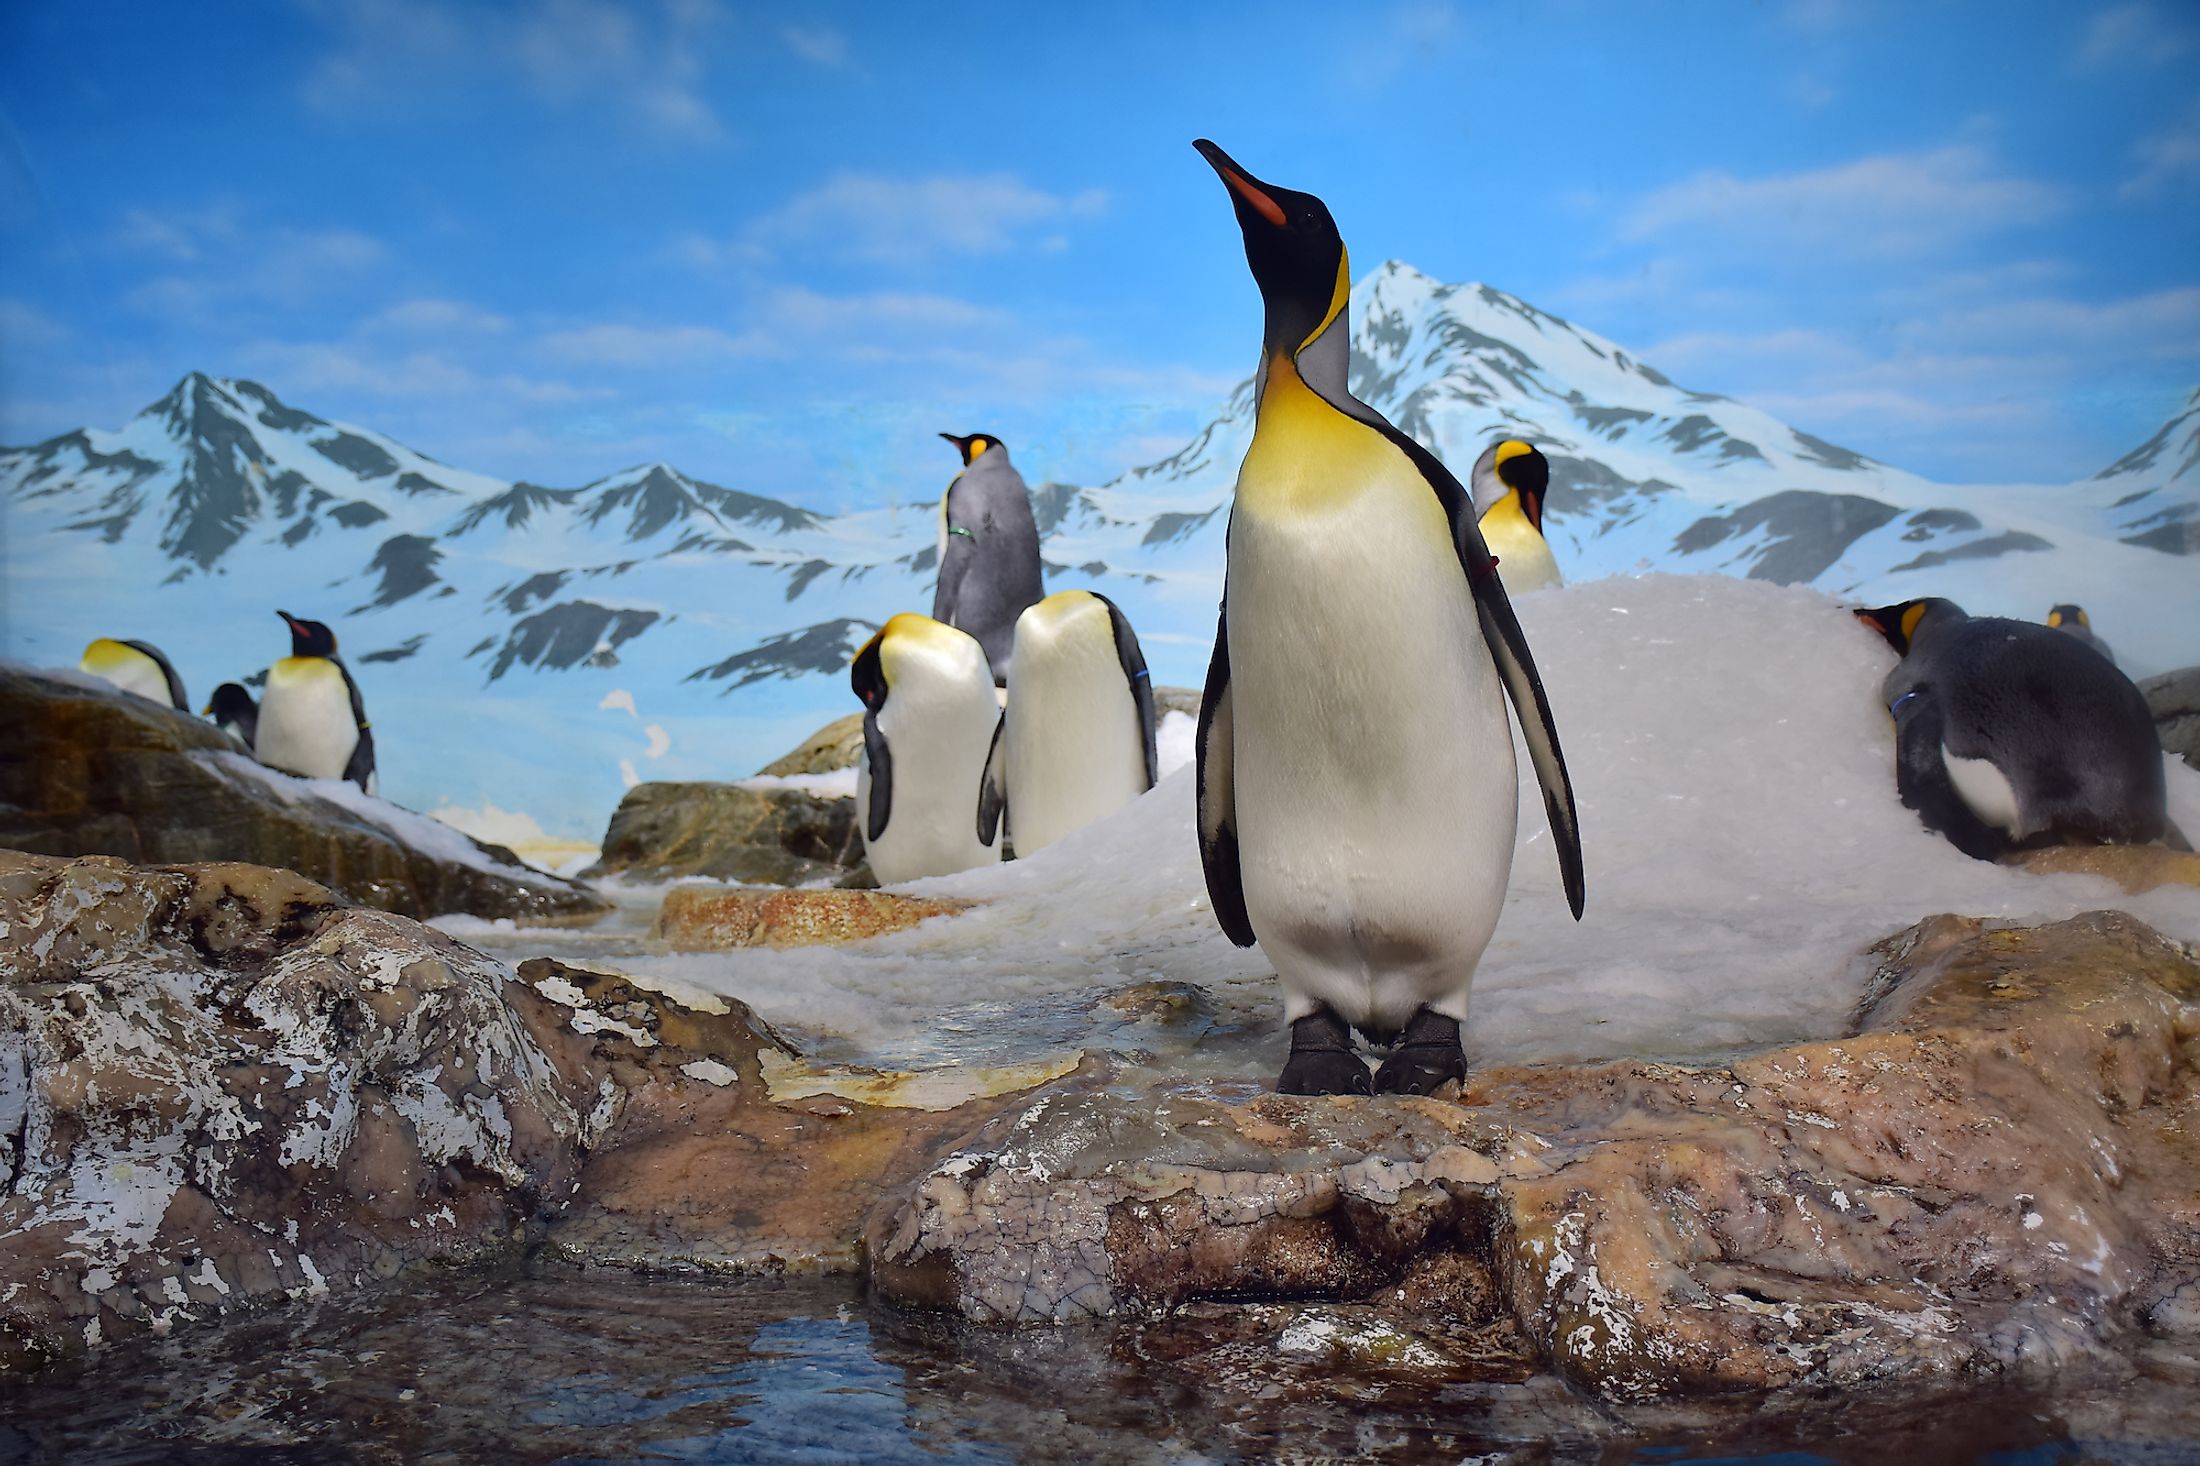 King penguins in Antarctica.